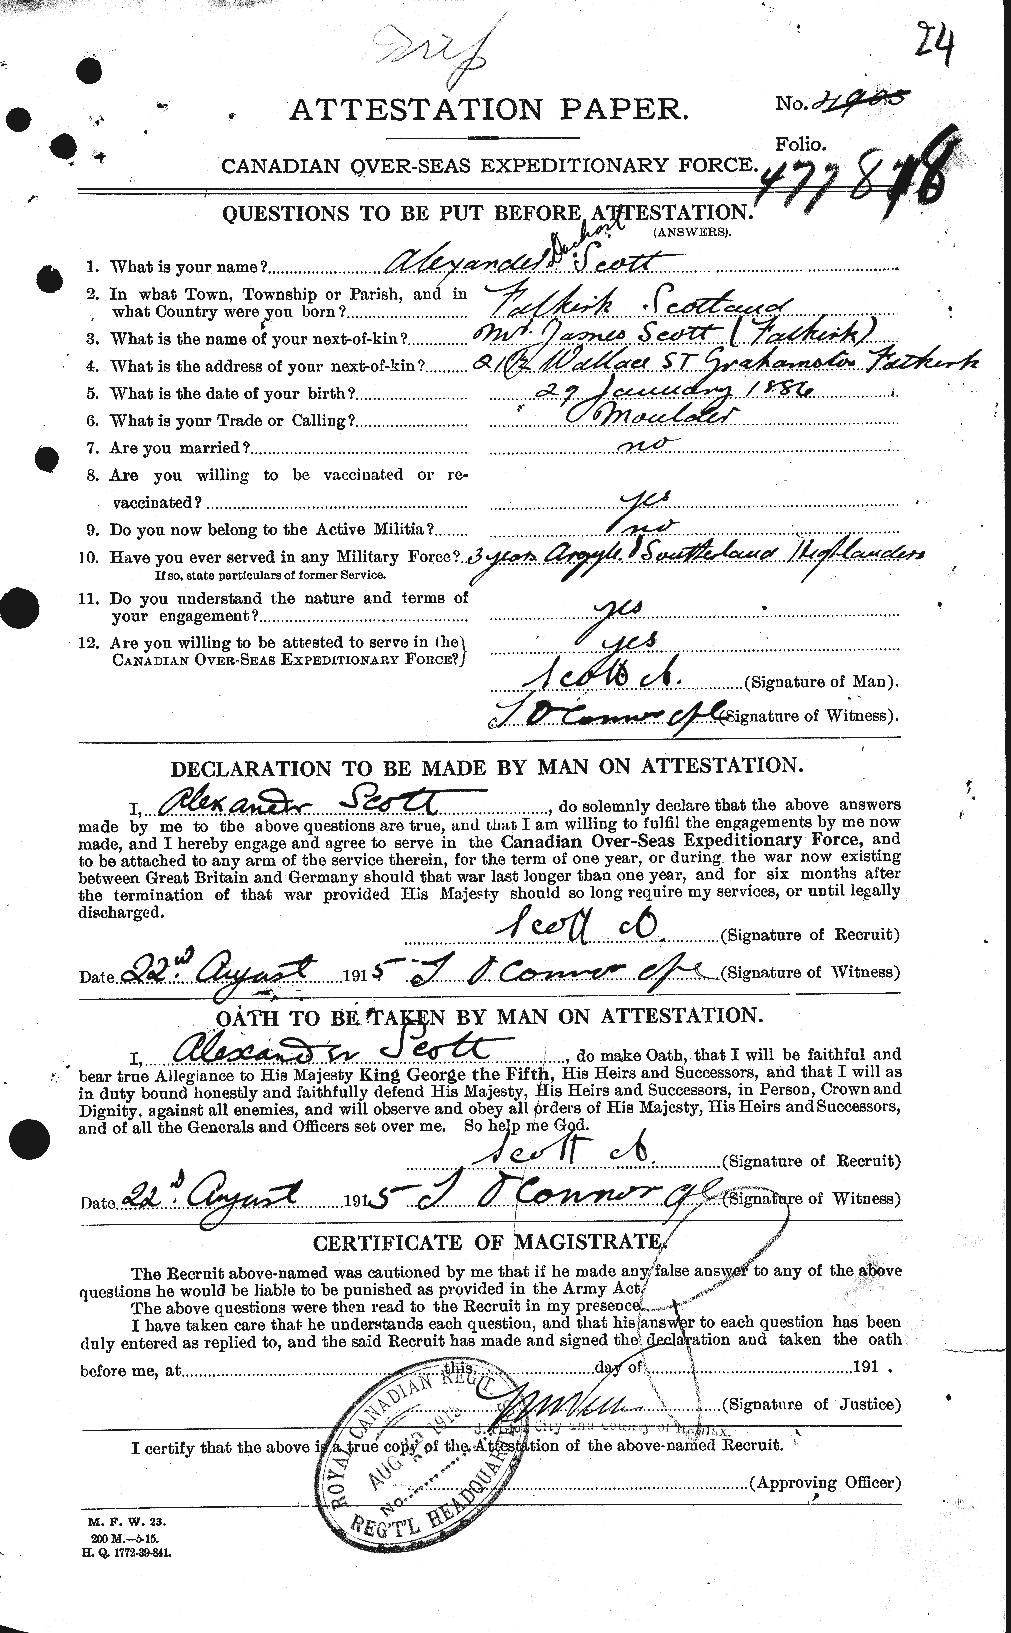 Dossiers du Personnel de la Première Guerre mondiale - CEC 086602a